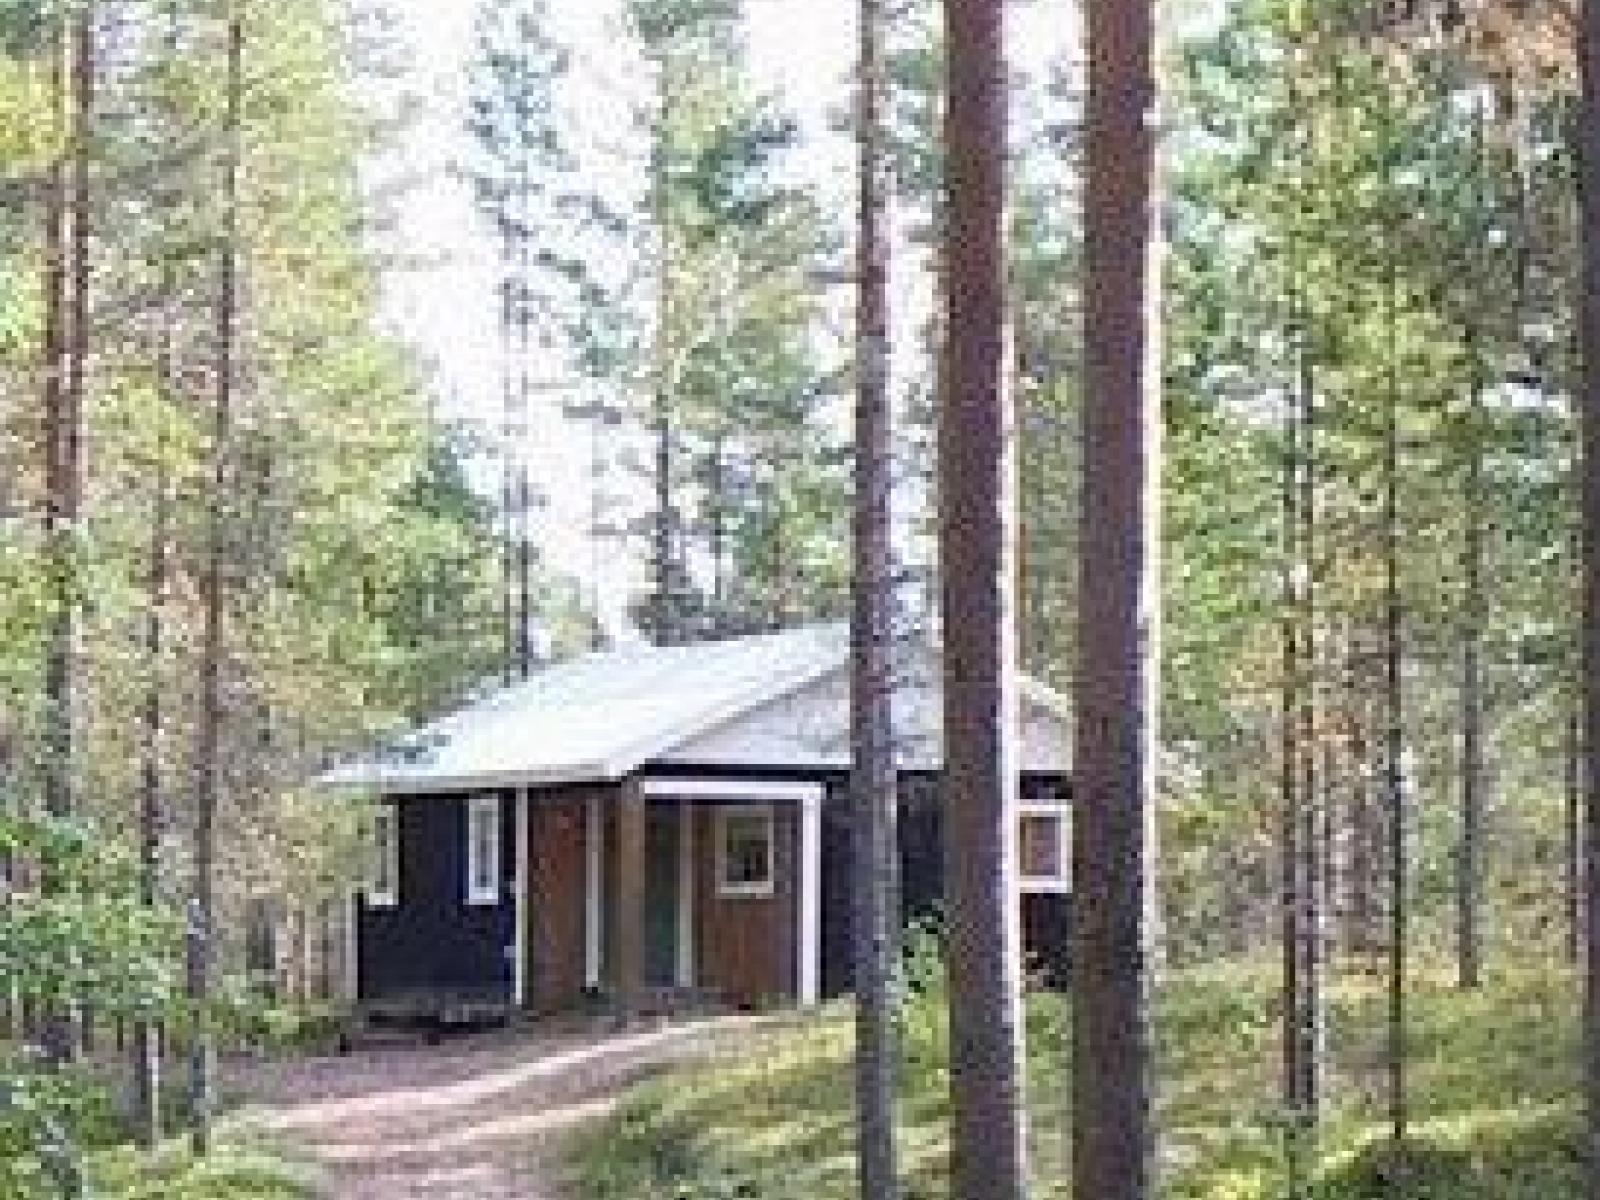 Holiday Camp Kläppsjö